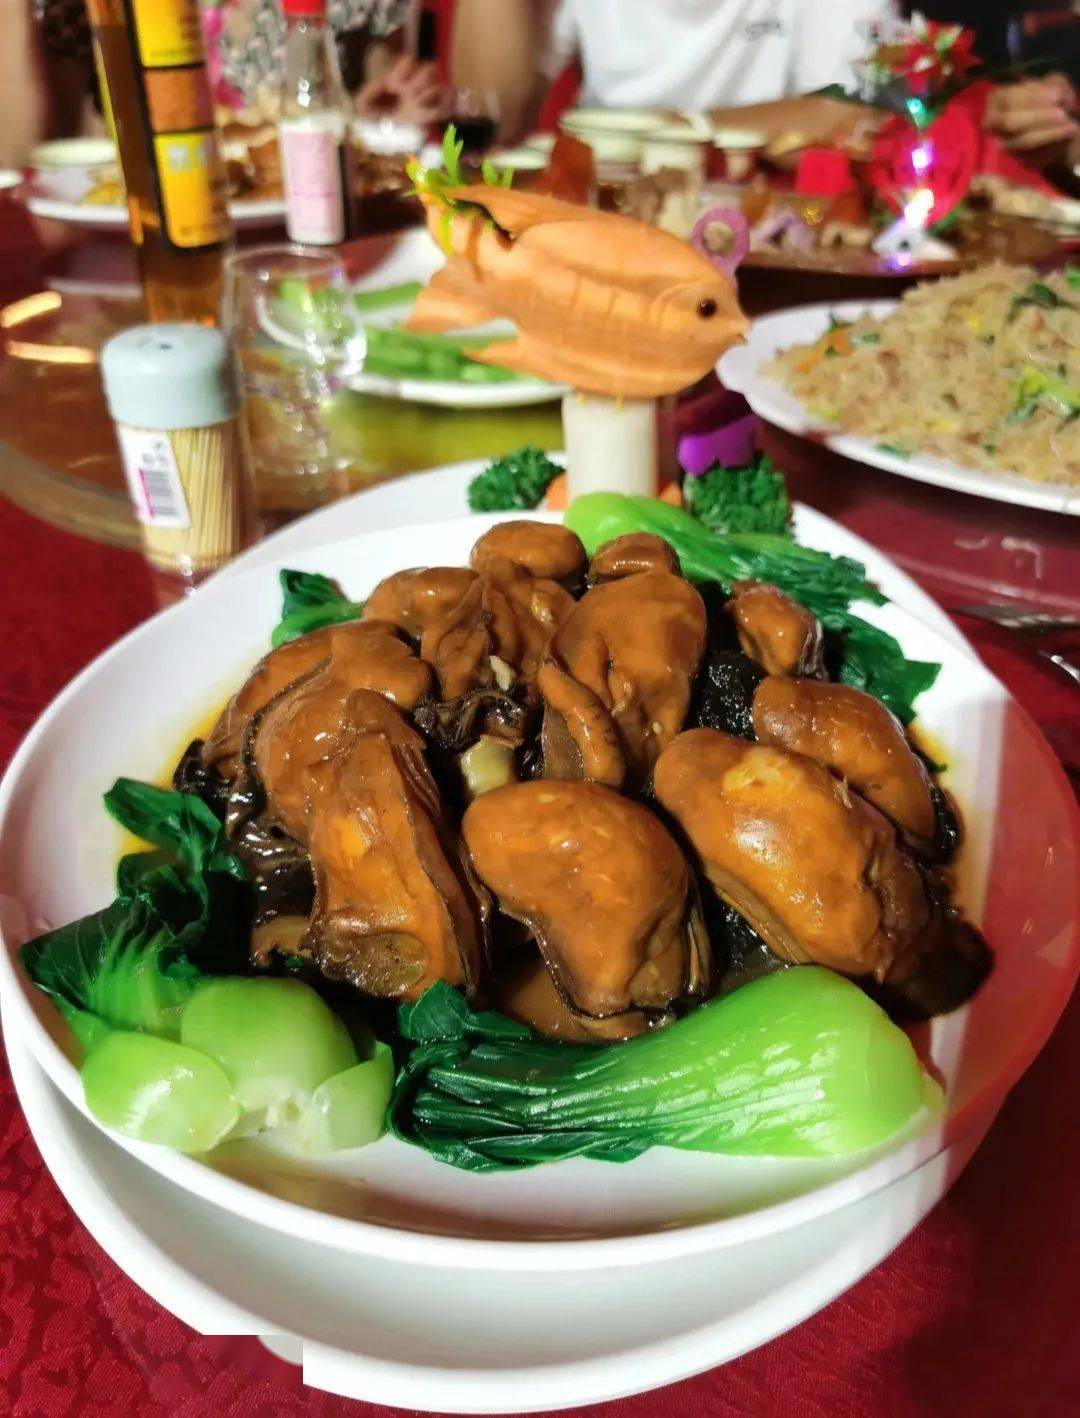 吴川喜宴菜图片